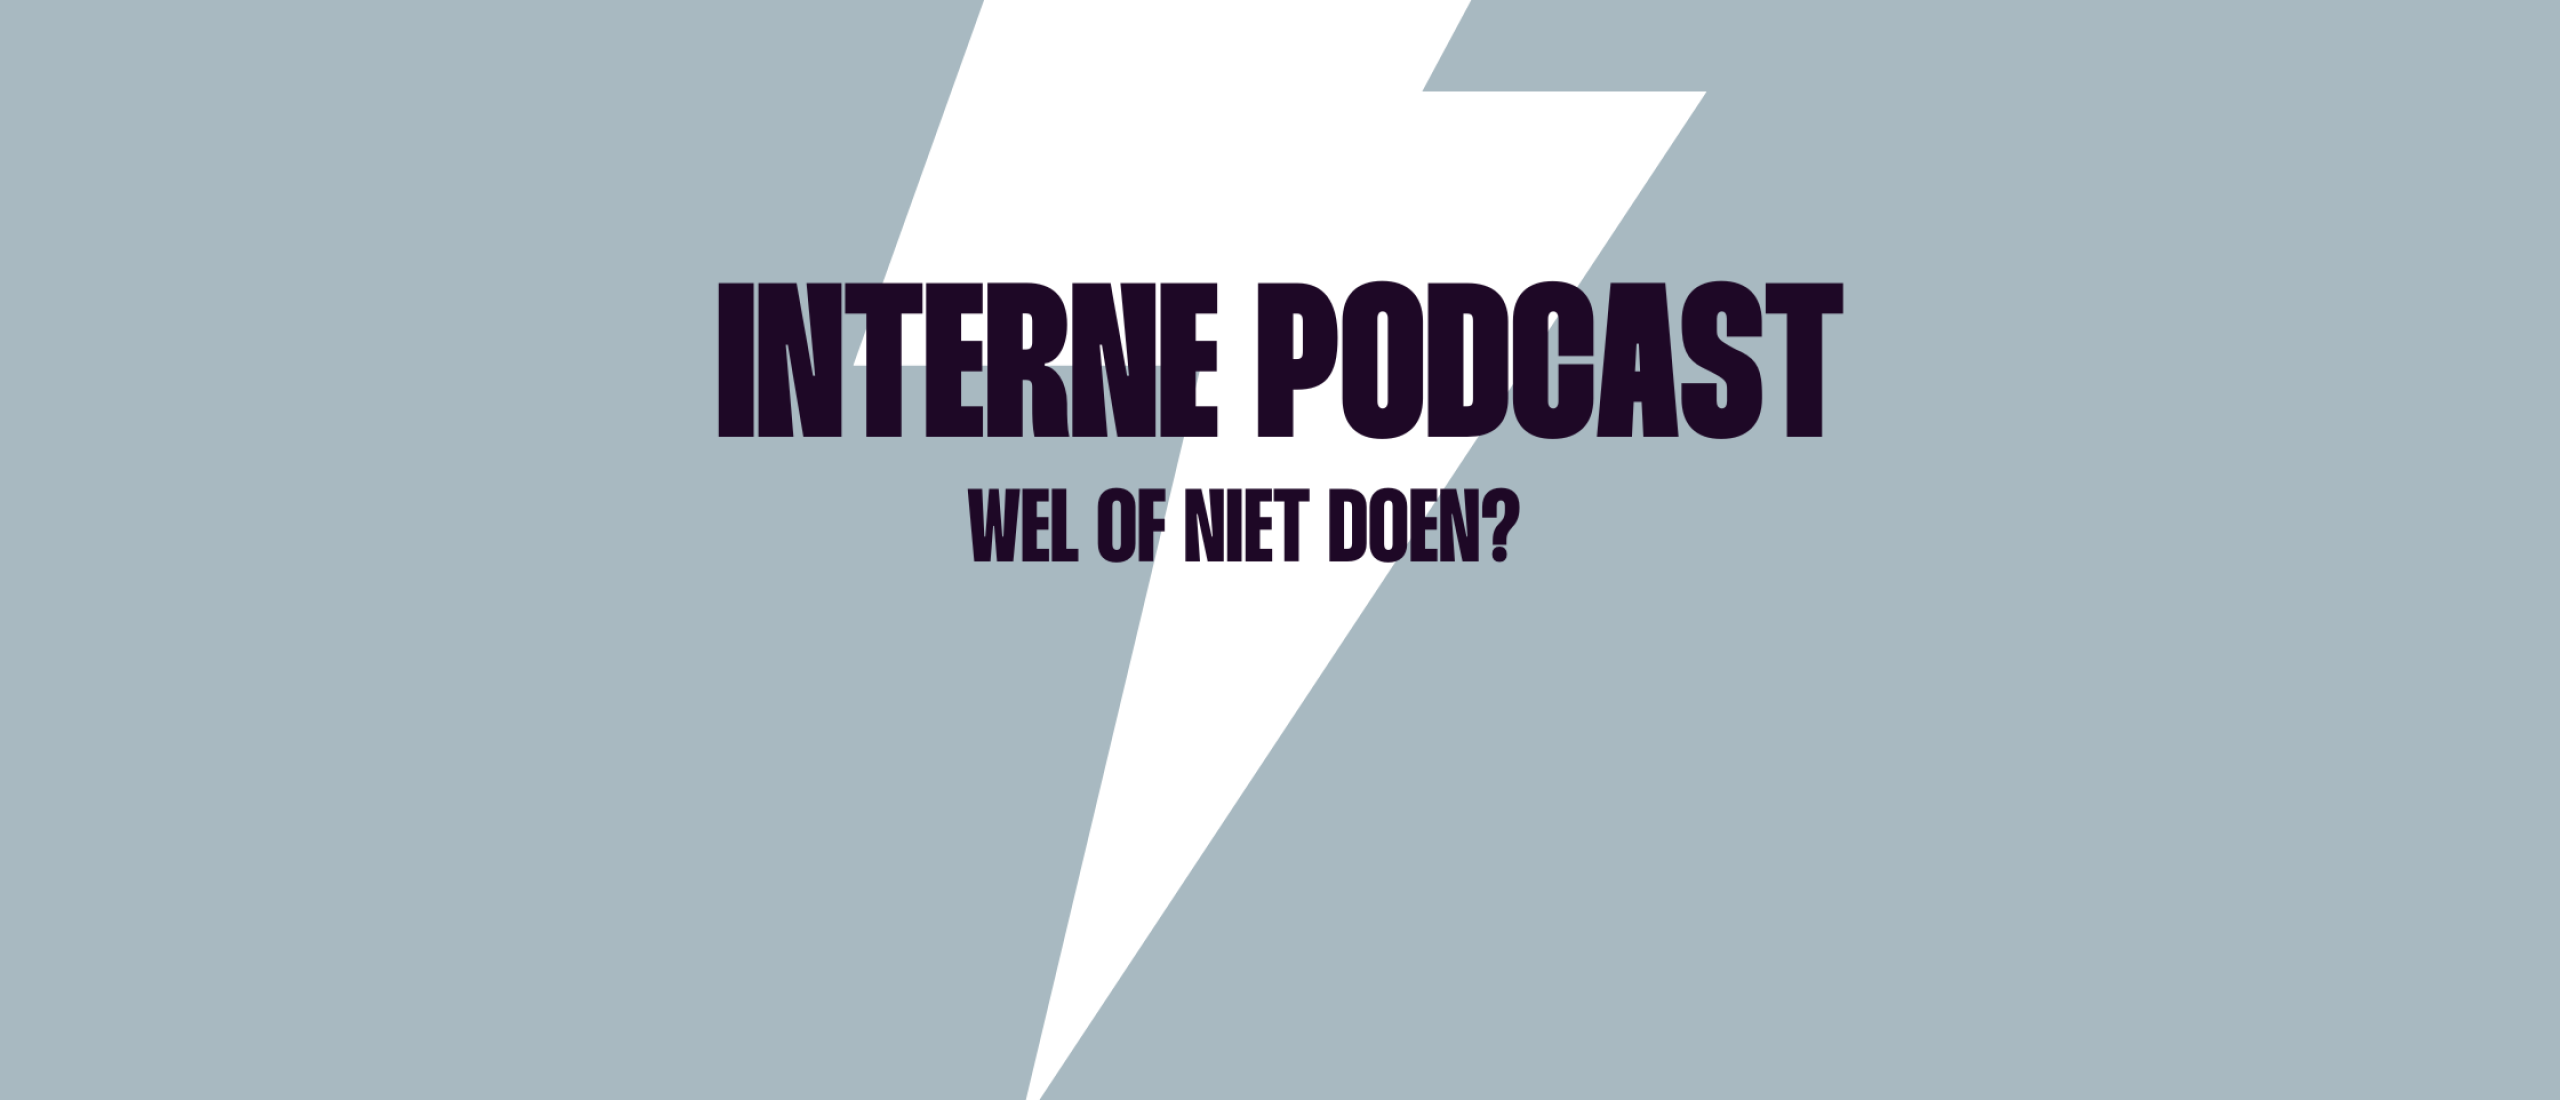 Interne podcast: wel of niet doen?